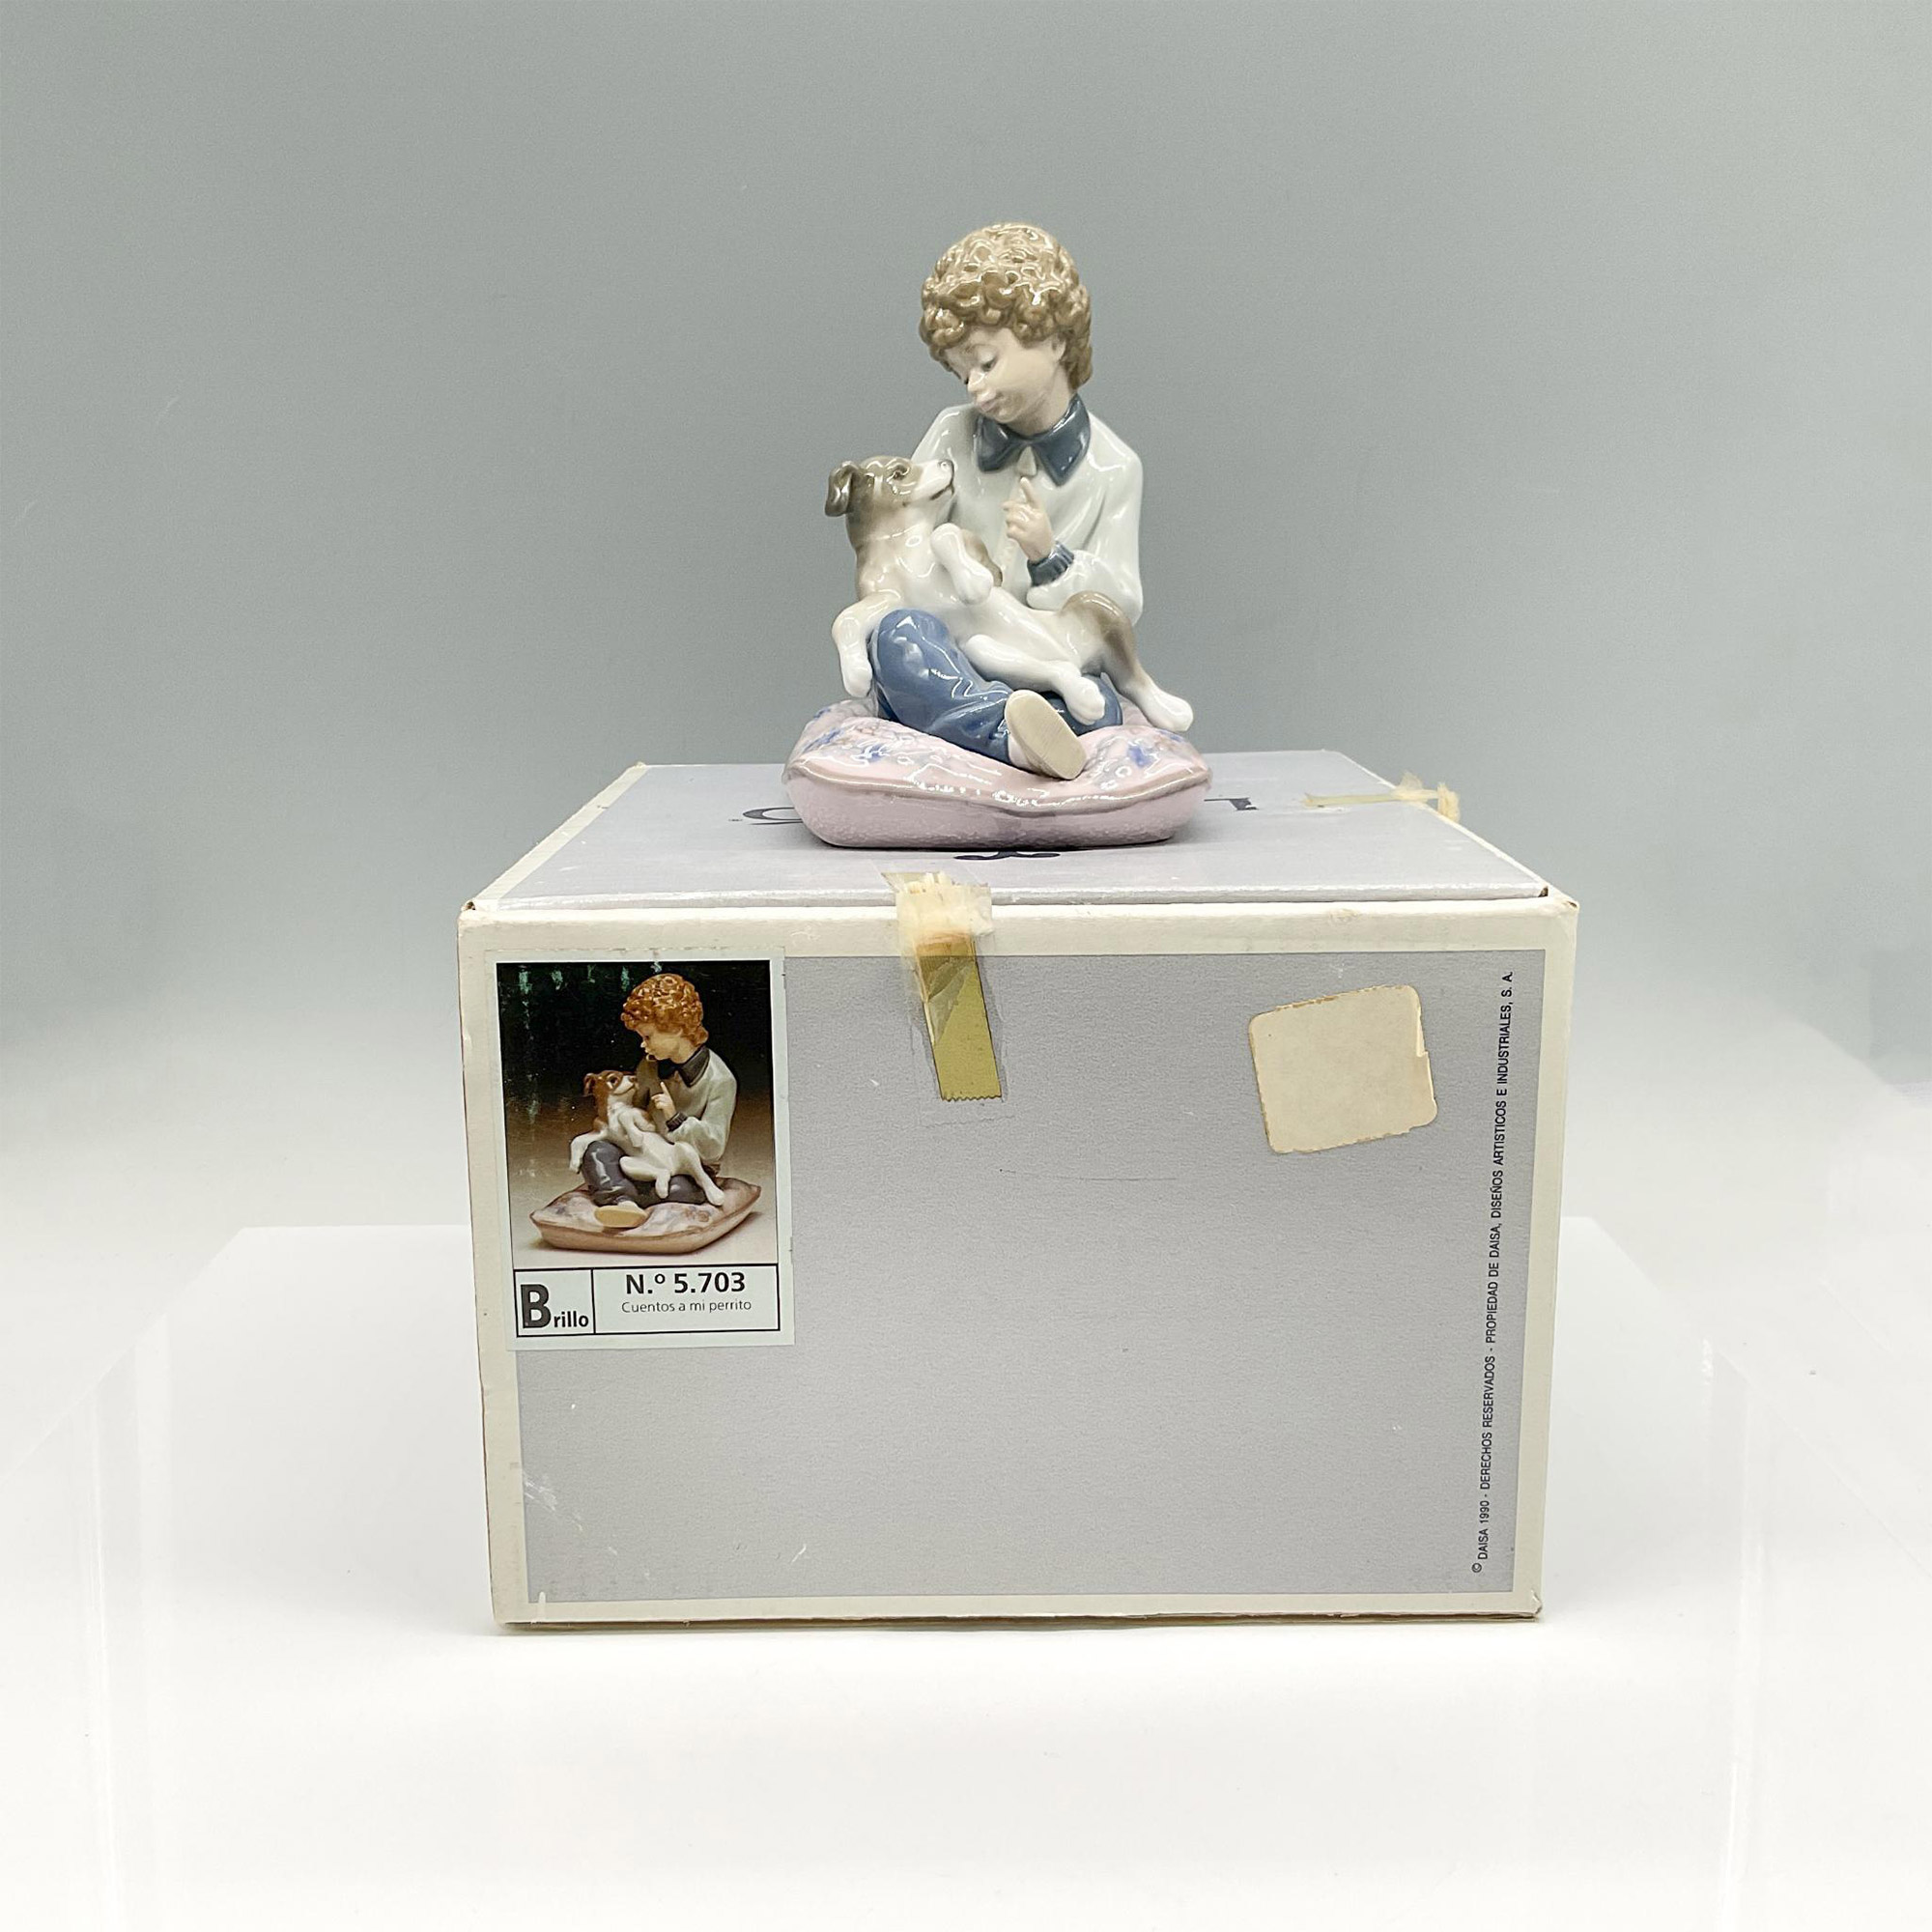 Behave! 1005703 - Lladro Porcelain Figurine - Image 4 of 4